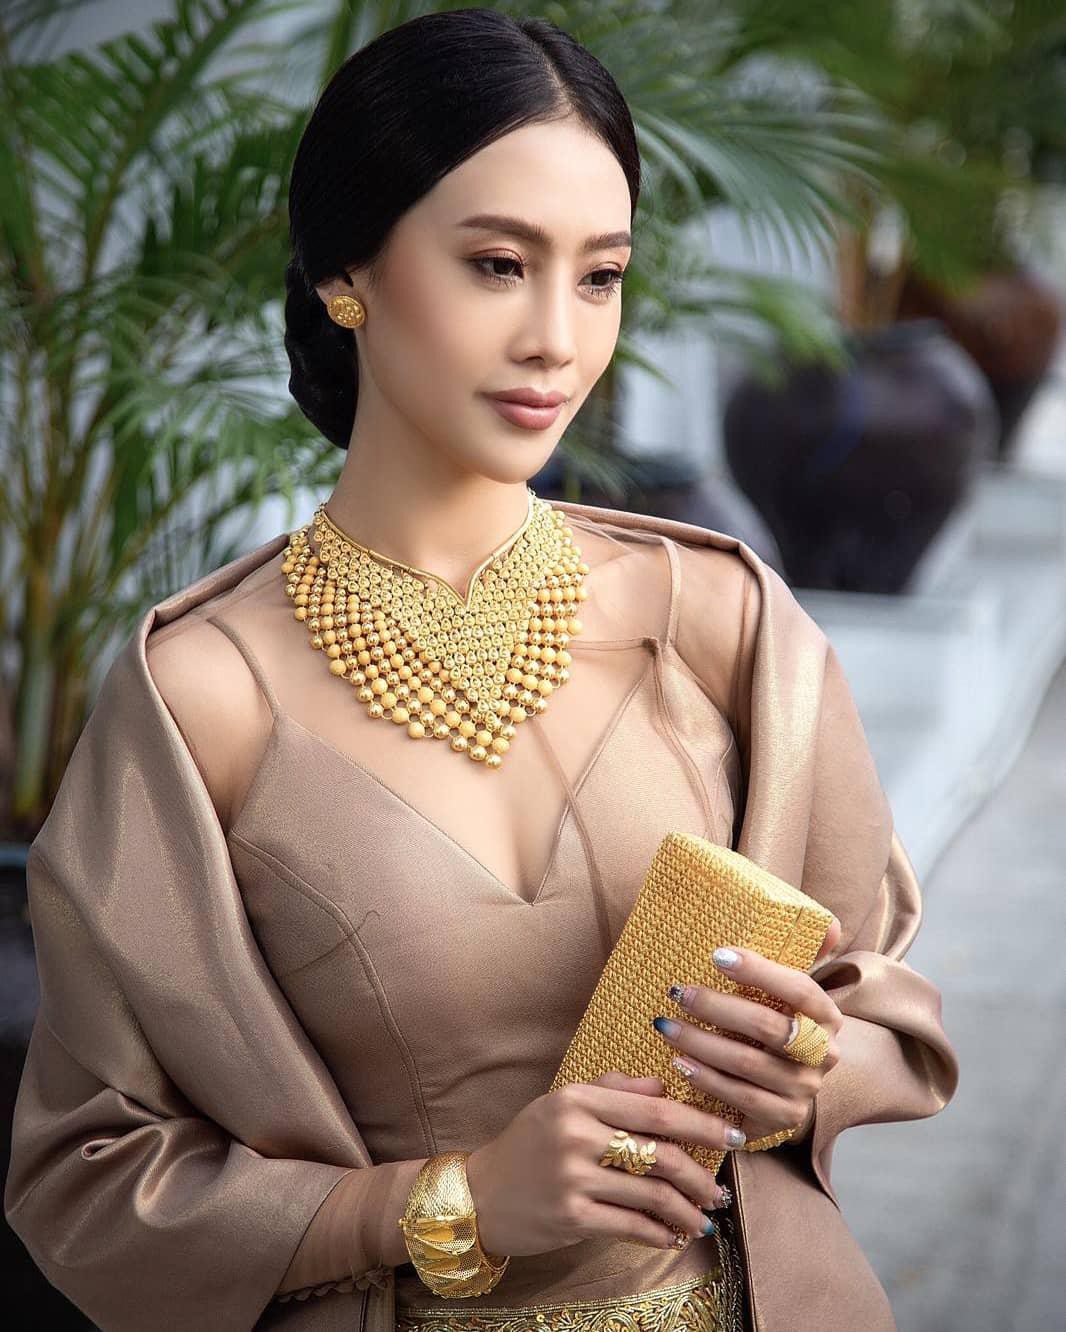 Tân Hoa hậu Hoà bình Myanmar 2021: Cao gần 1m80, mặt xinh, dáng thon - Ảnh 10